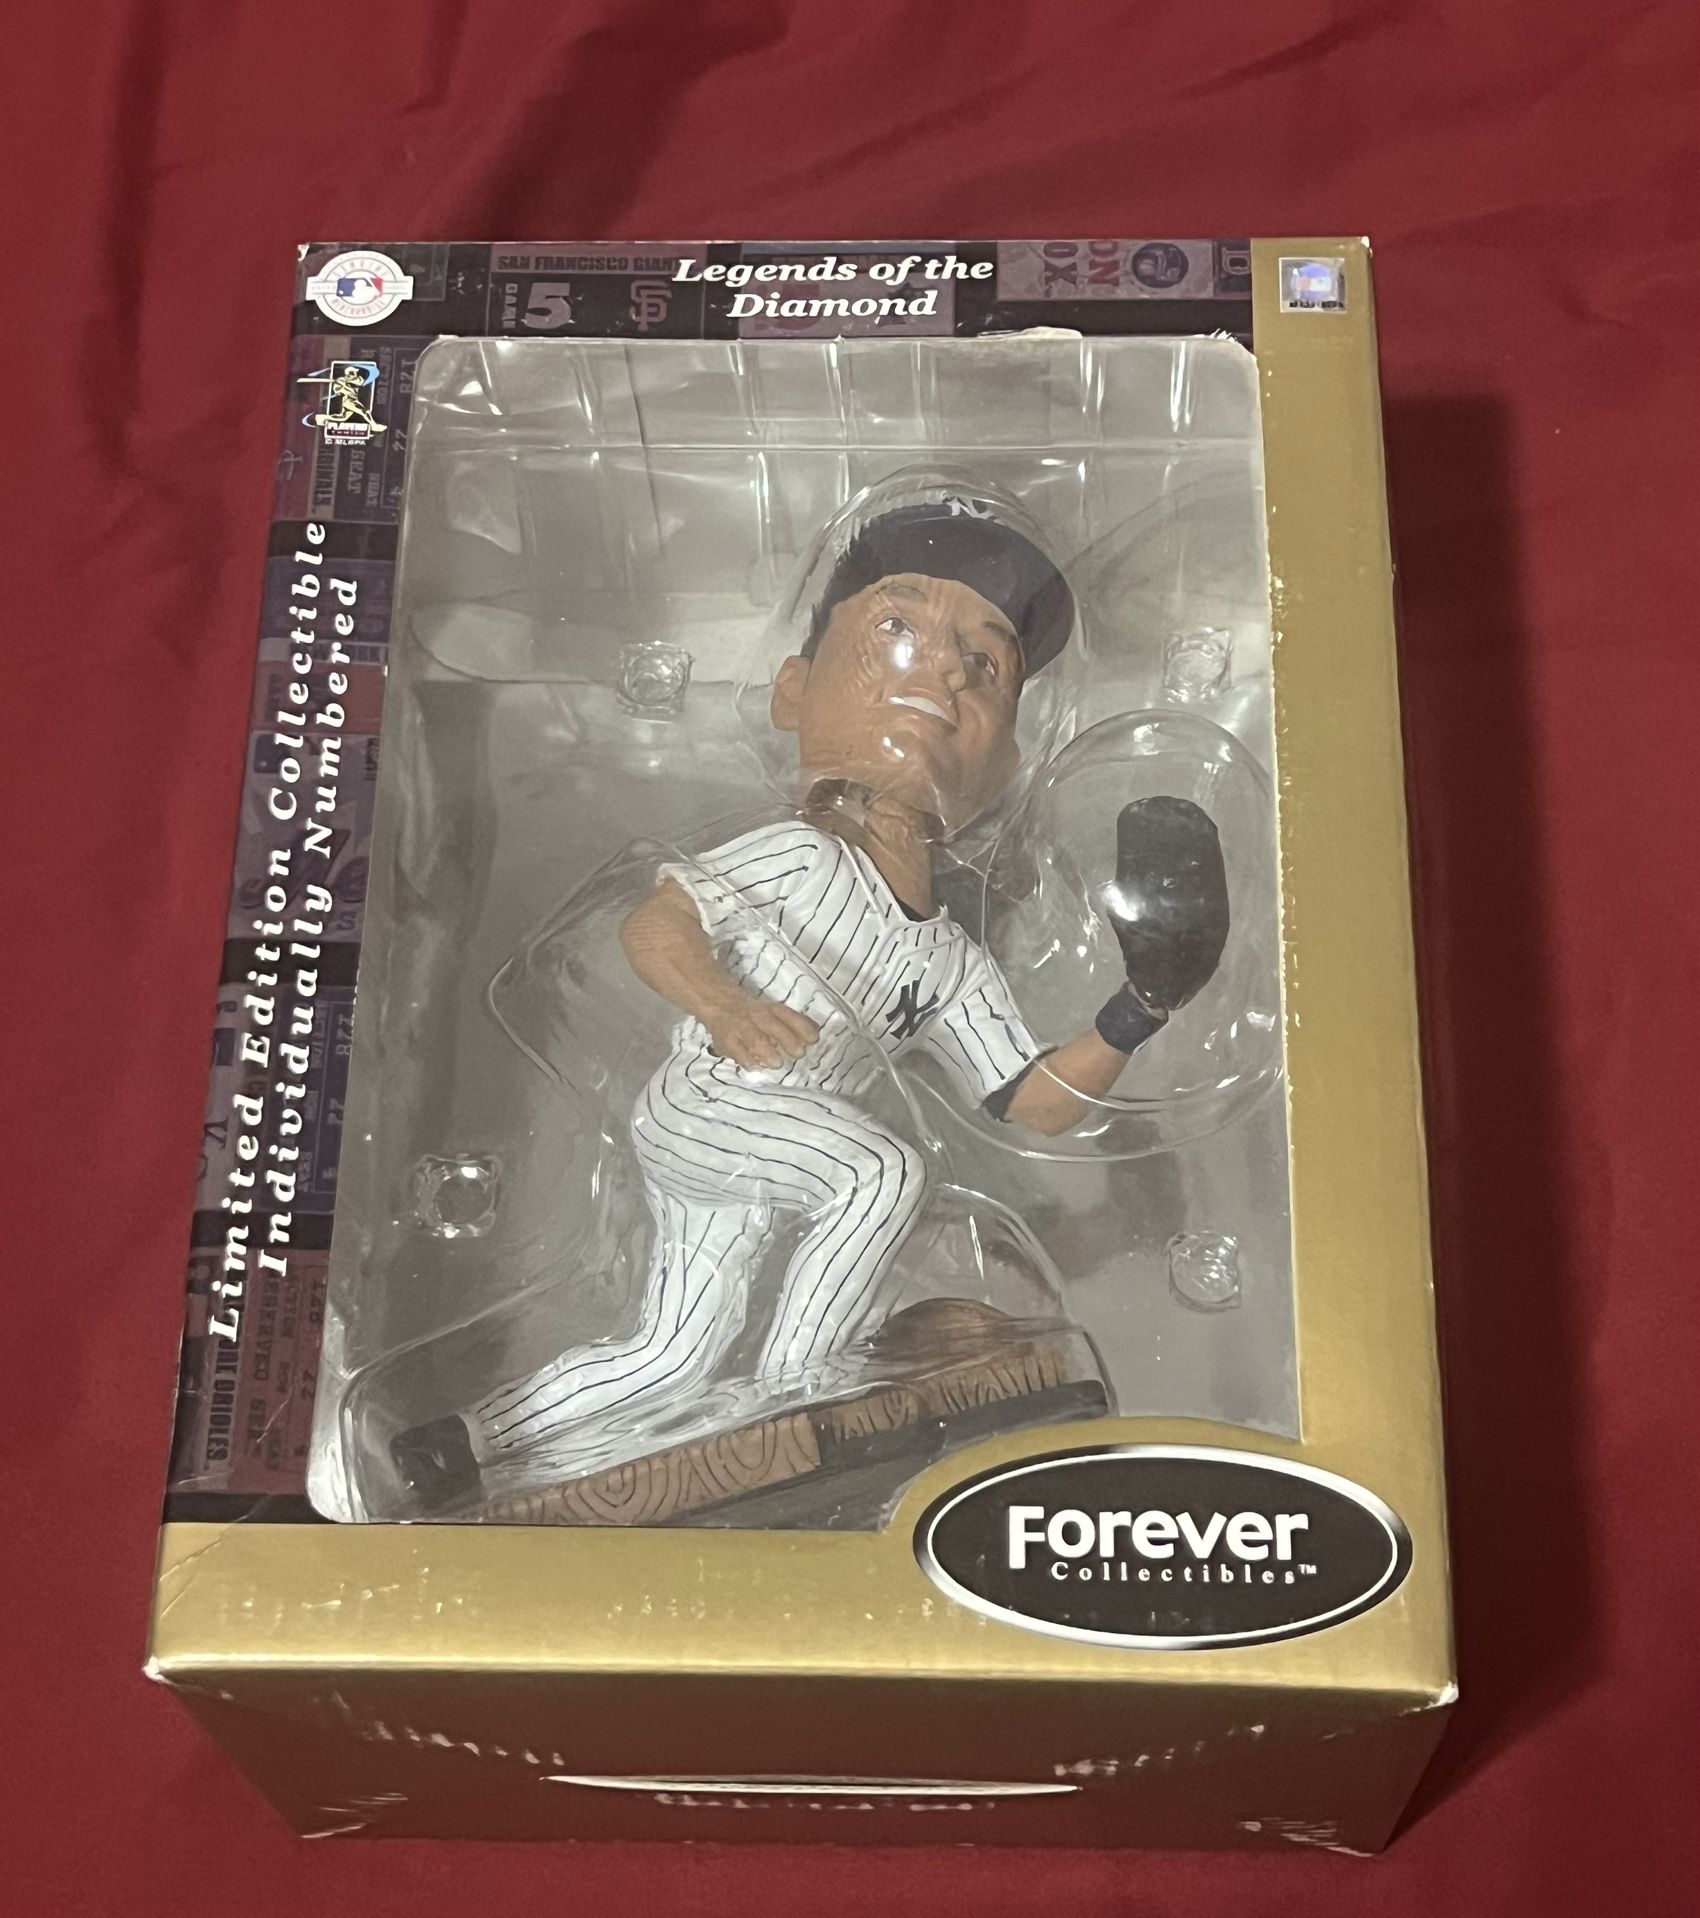 2004 Derek Jeter Legends of the Diamond Vintage Baseball Bobblehead Rare  for Sale in Ringwood, NJ - OfferUp